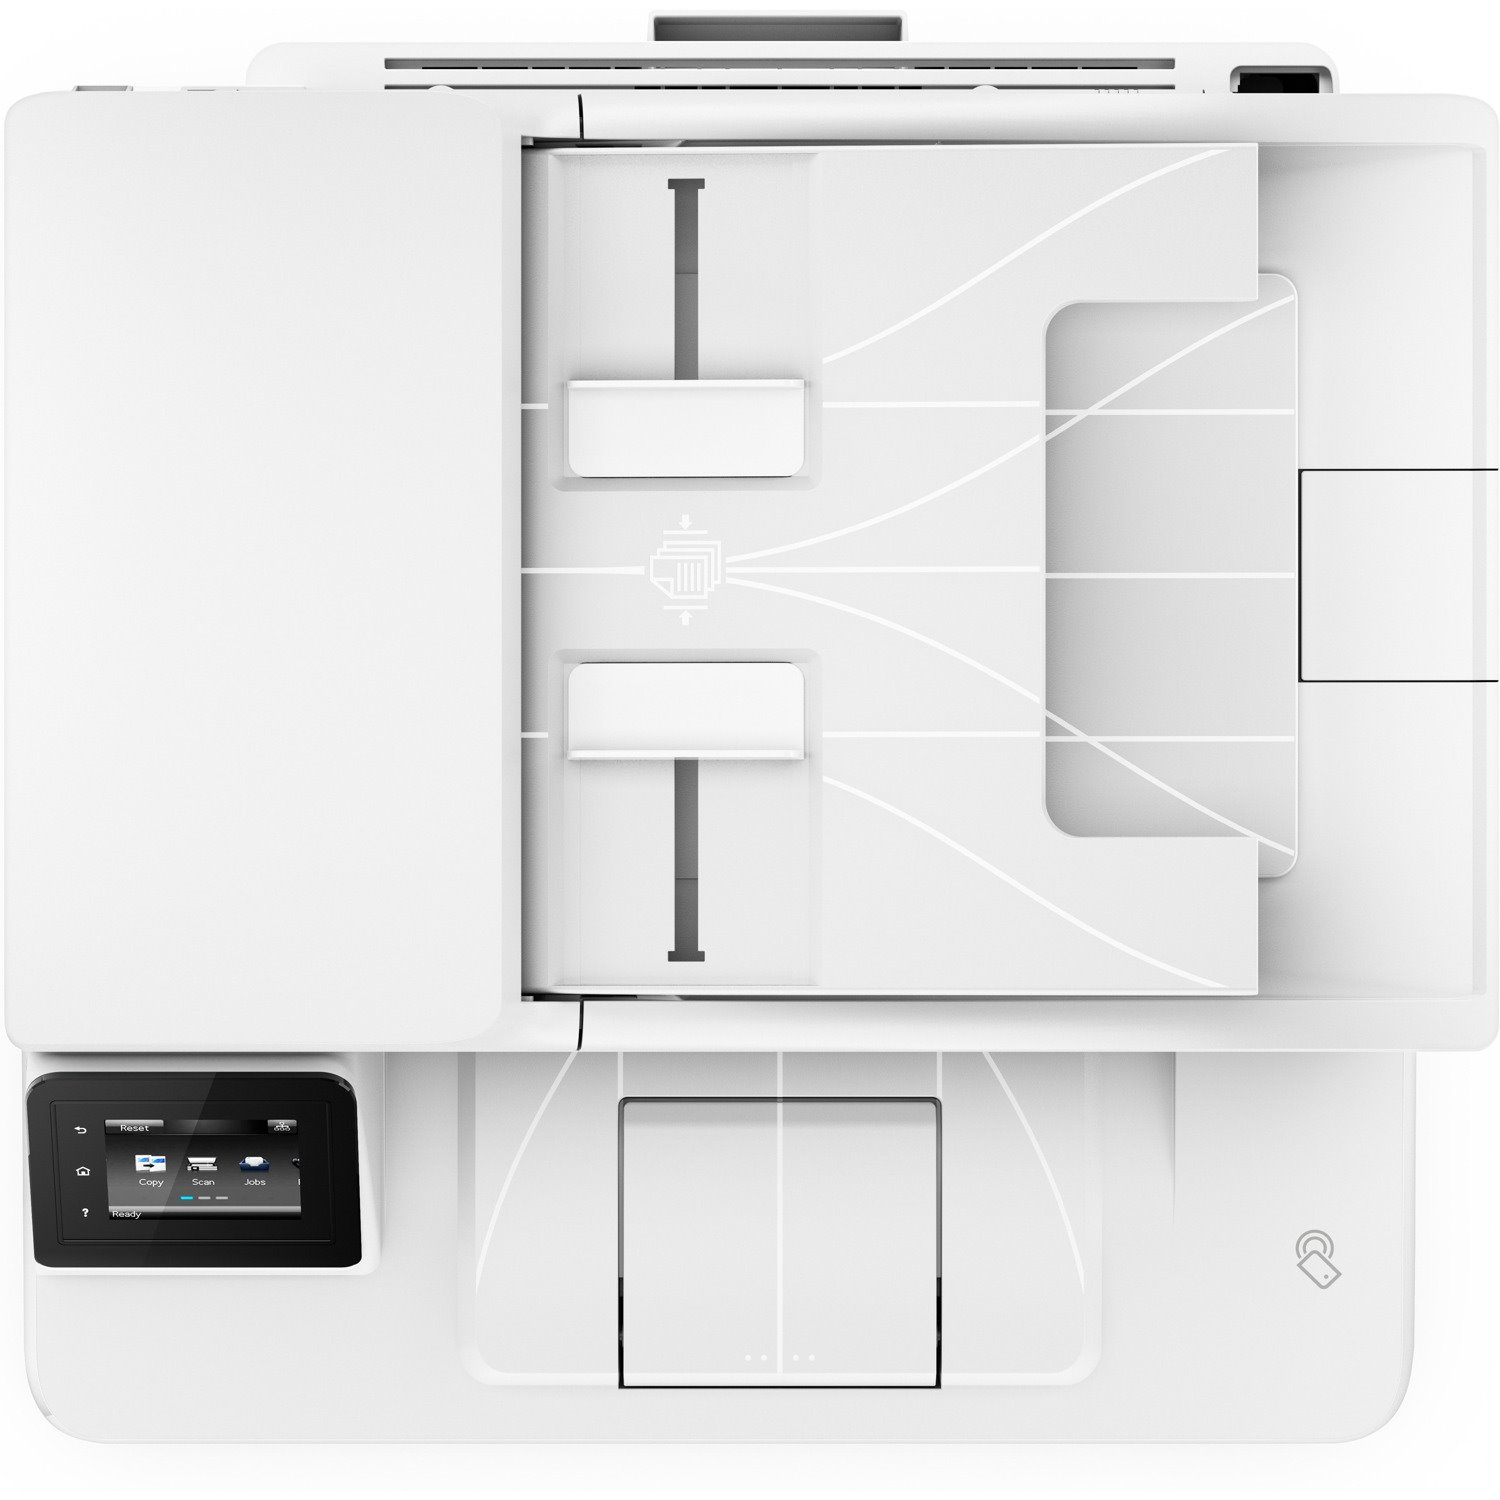 HP LaserJet Pro M227 M227fdw Wireless Laser Multifunction Printer - Monochrome